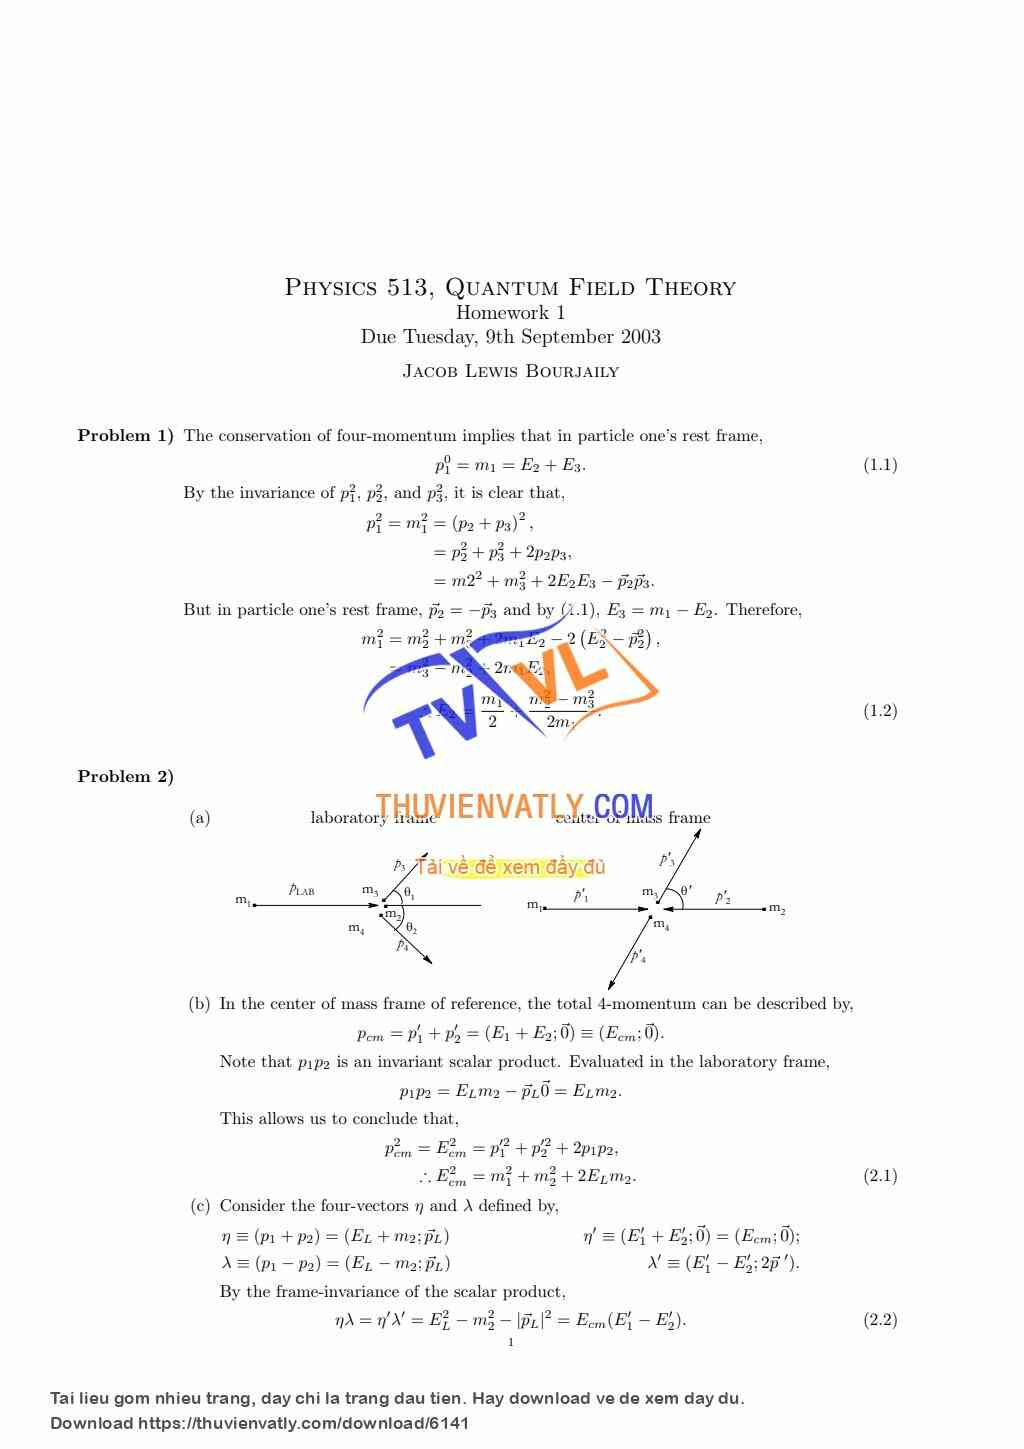 Giải một số bài tập và chứng minh lý thuyết của Lý thuyết trường lượng tử (QFT) sách Peskin